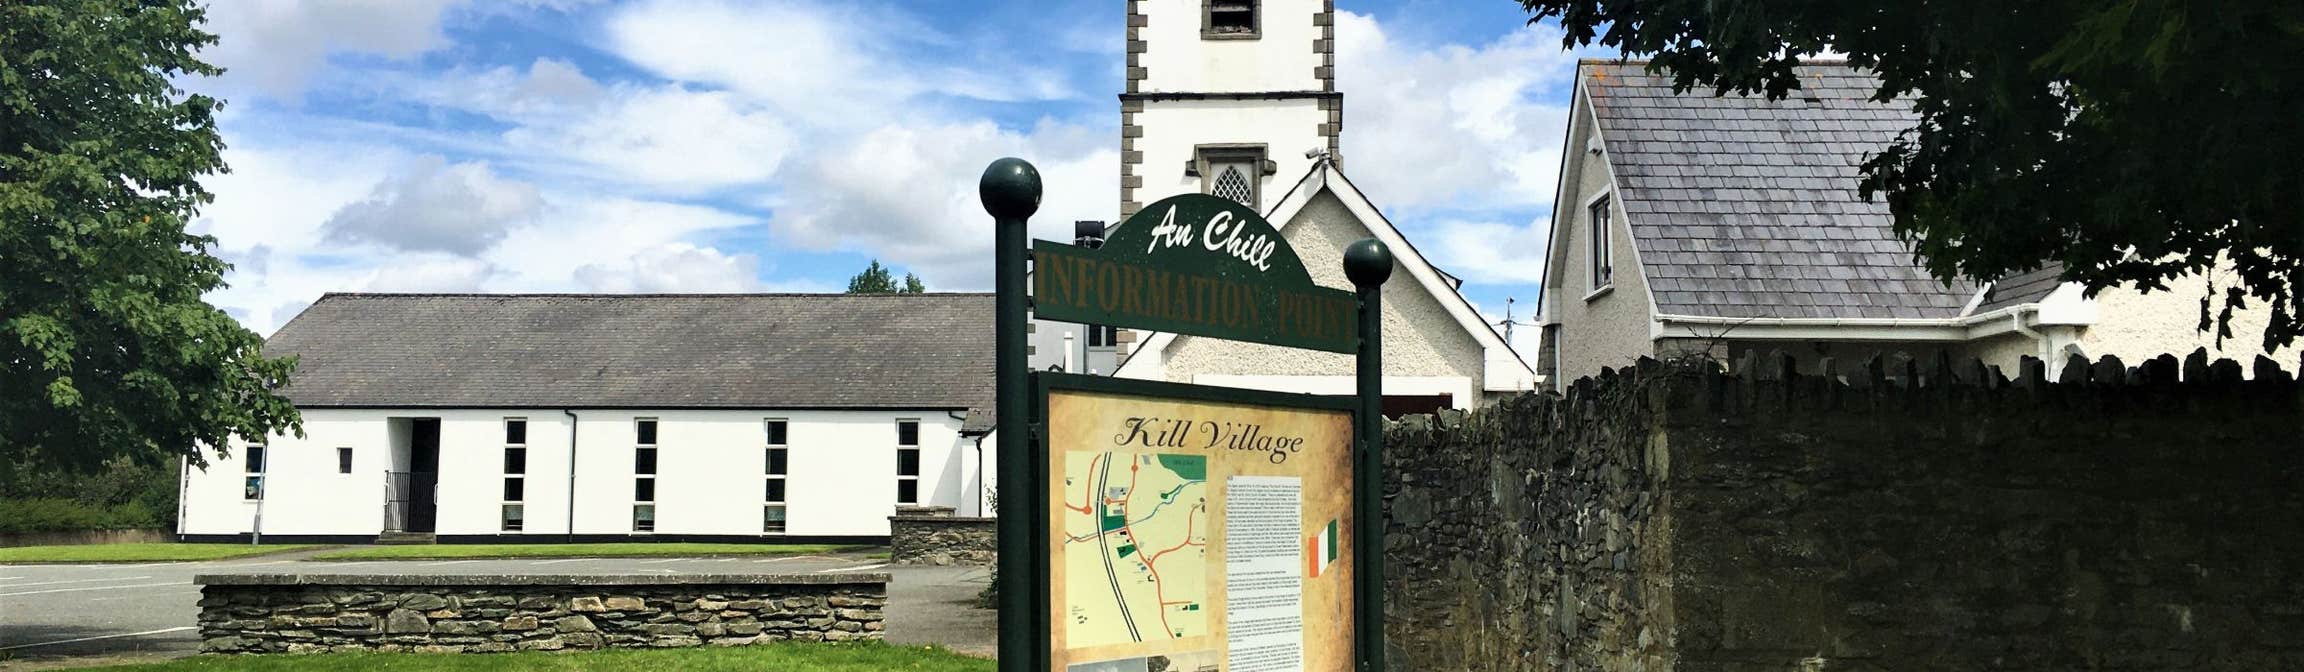 Image of Kill Village in County Kildare